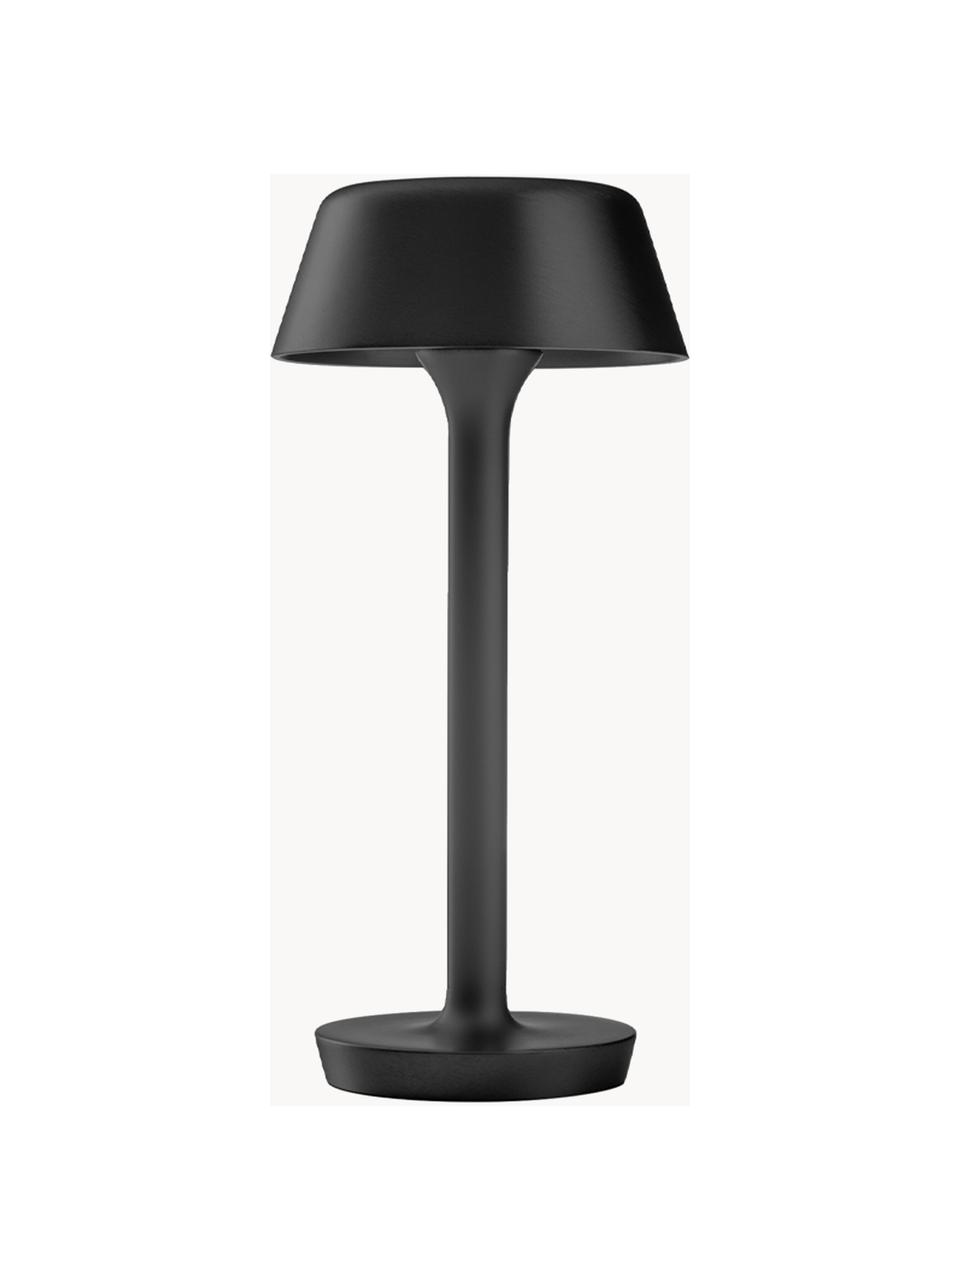 Mobilna lampa stołowa LED z funkcją przyciemniania Firefly, Aluminium powlekane, Czarny, Ø 12 x W 27 cm